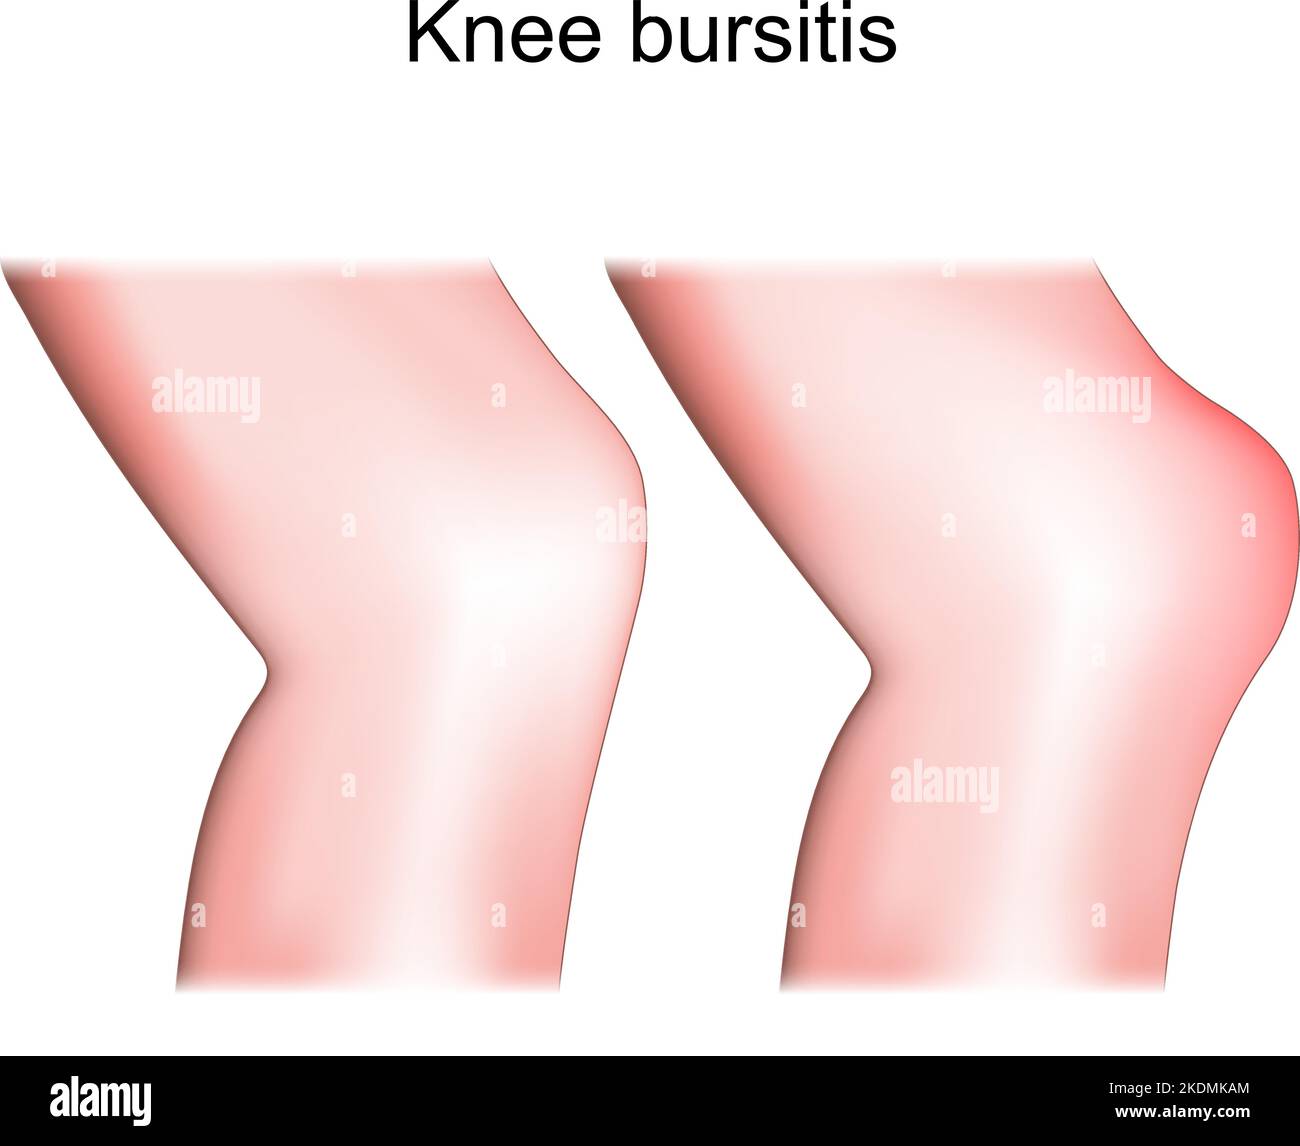 Borsite del ginocchio. Bursite prepatellare differenza e confronto di articolazione sana e infiammazione del ginocchio. Vista laterale o laterale della gamba umana. Vettore Illustrazione Vettoriale